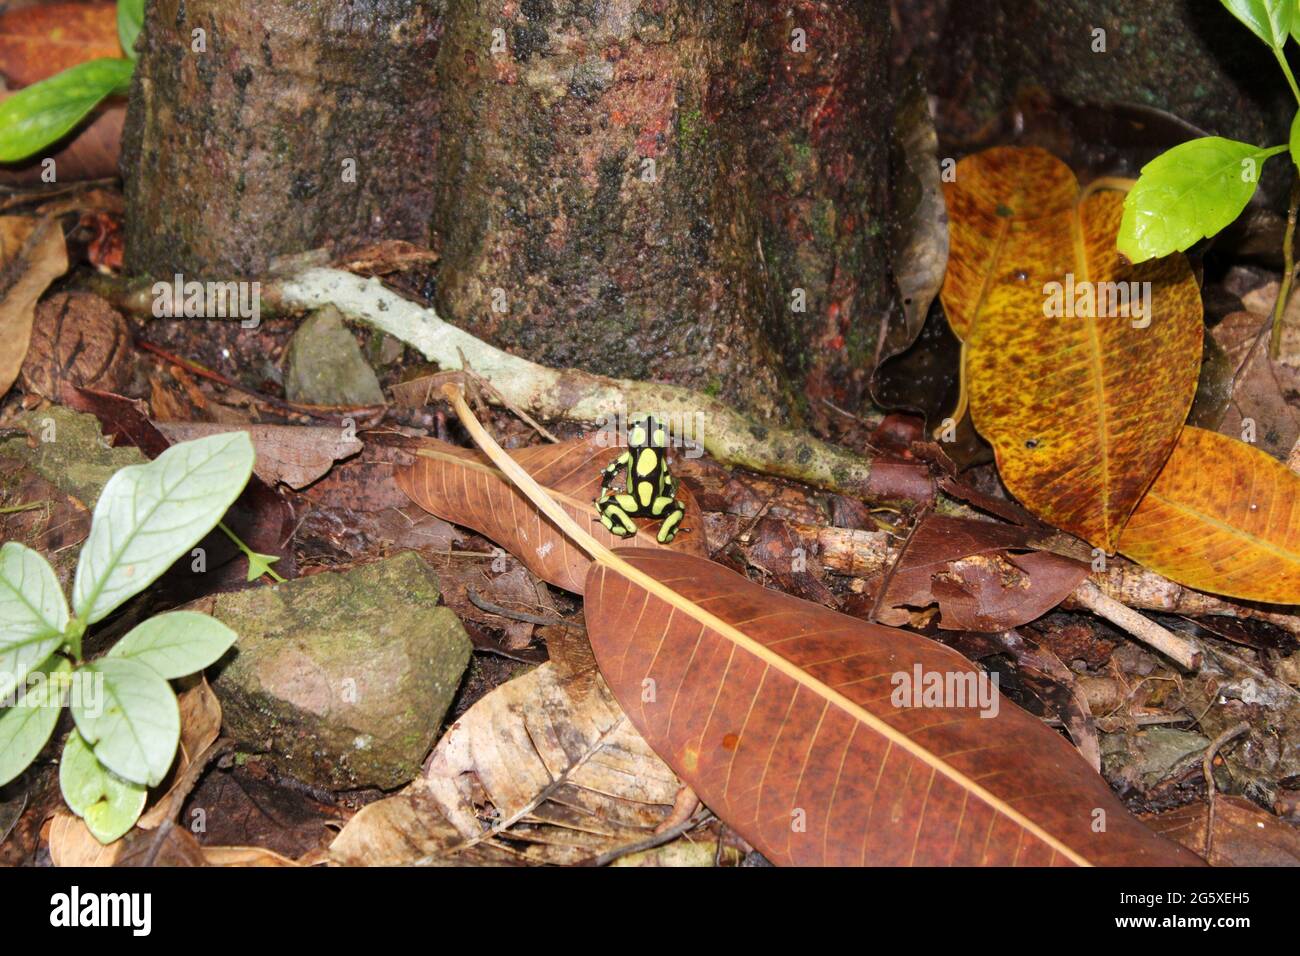 rana velenosa endemica della colombia sudoccidentale. Foto Stock